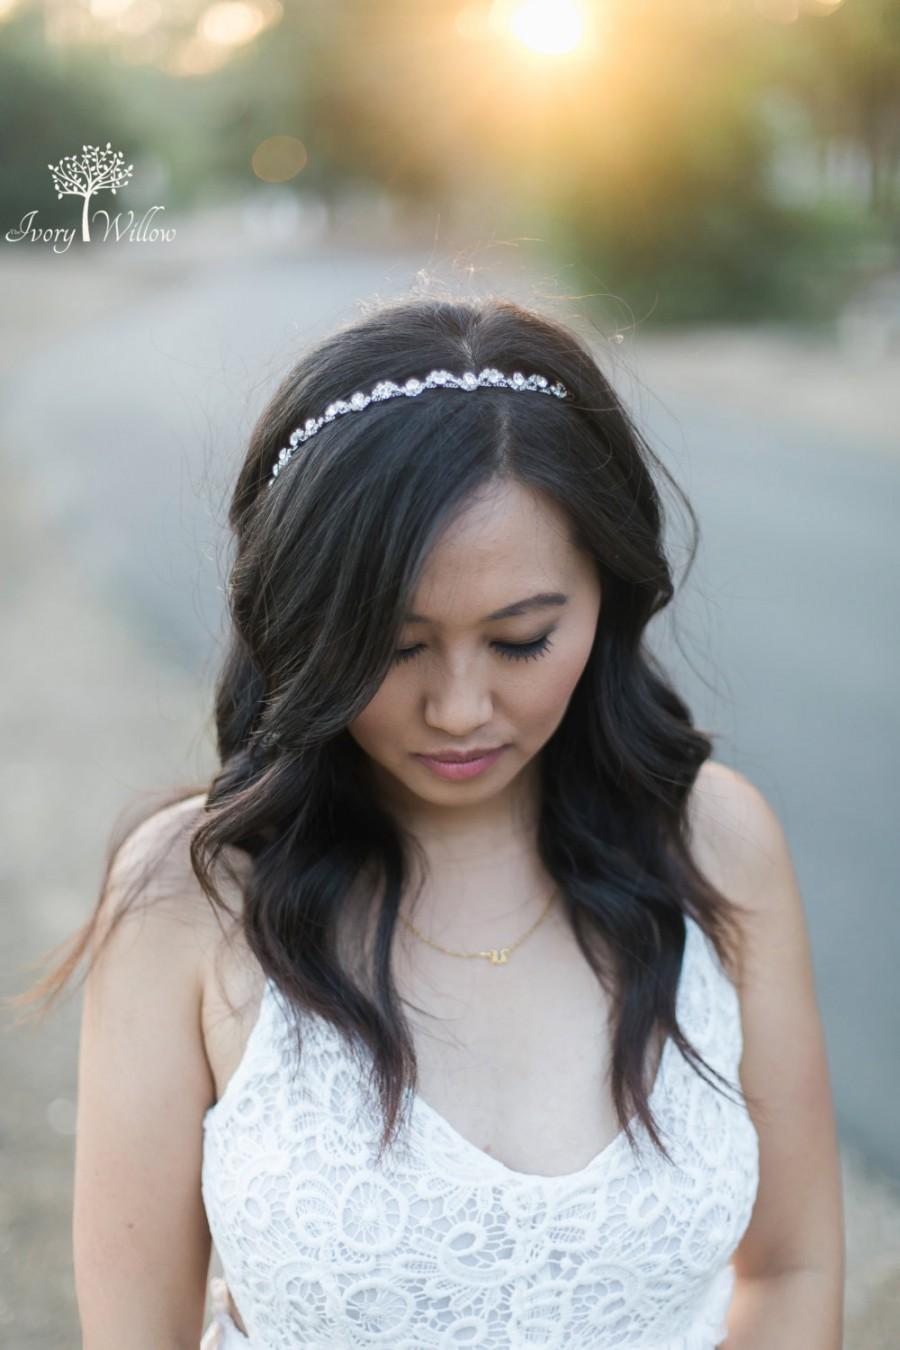 Wedding - Crystal Wedding Headband - Bridal Headband - Silver Tie back Headband - Photo Prop - Wedding Headpiece - Bridal Headpiece - Bridesmaid